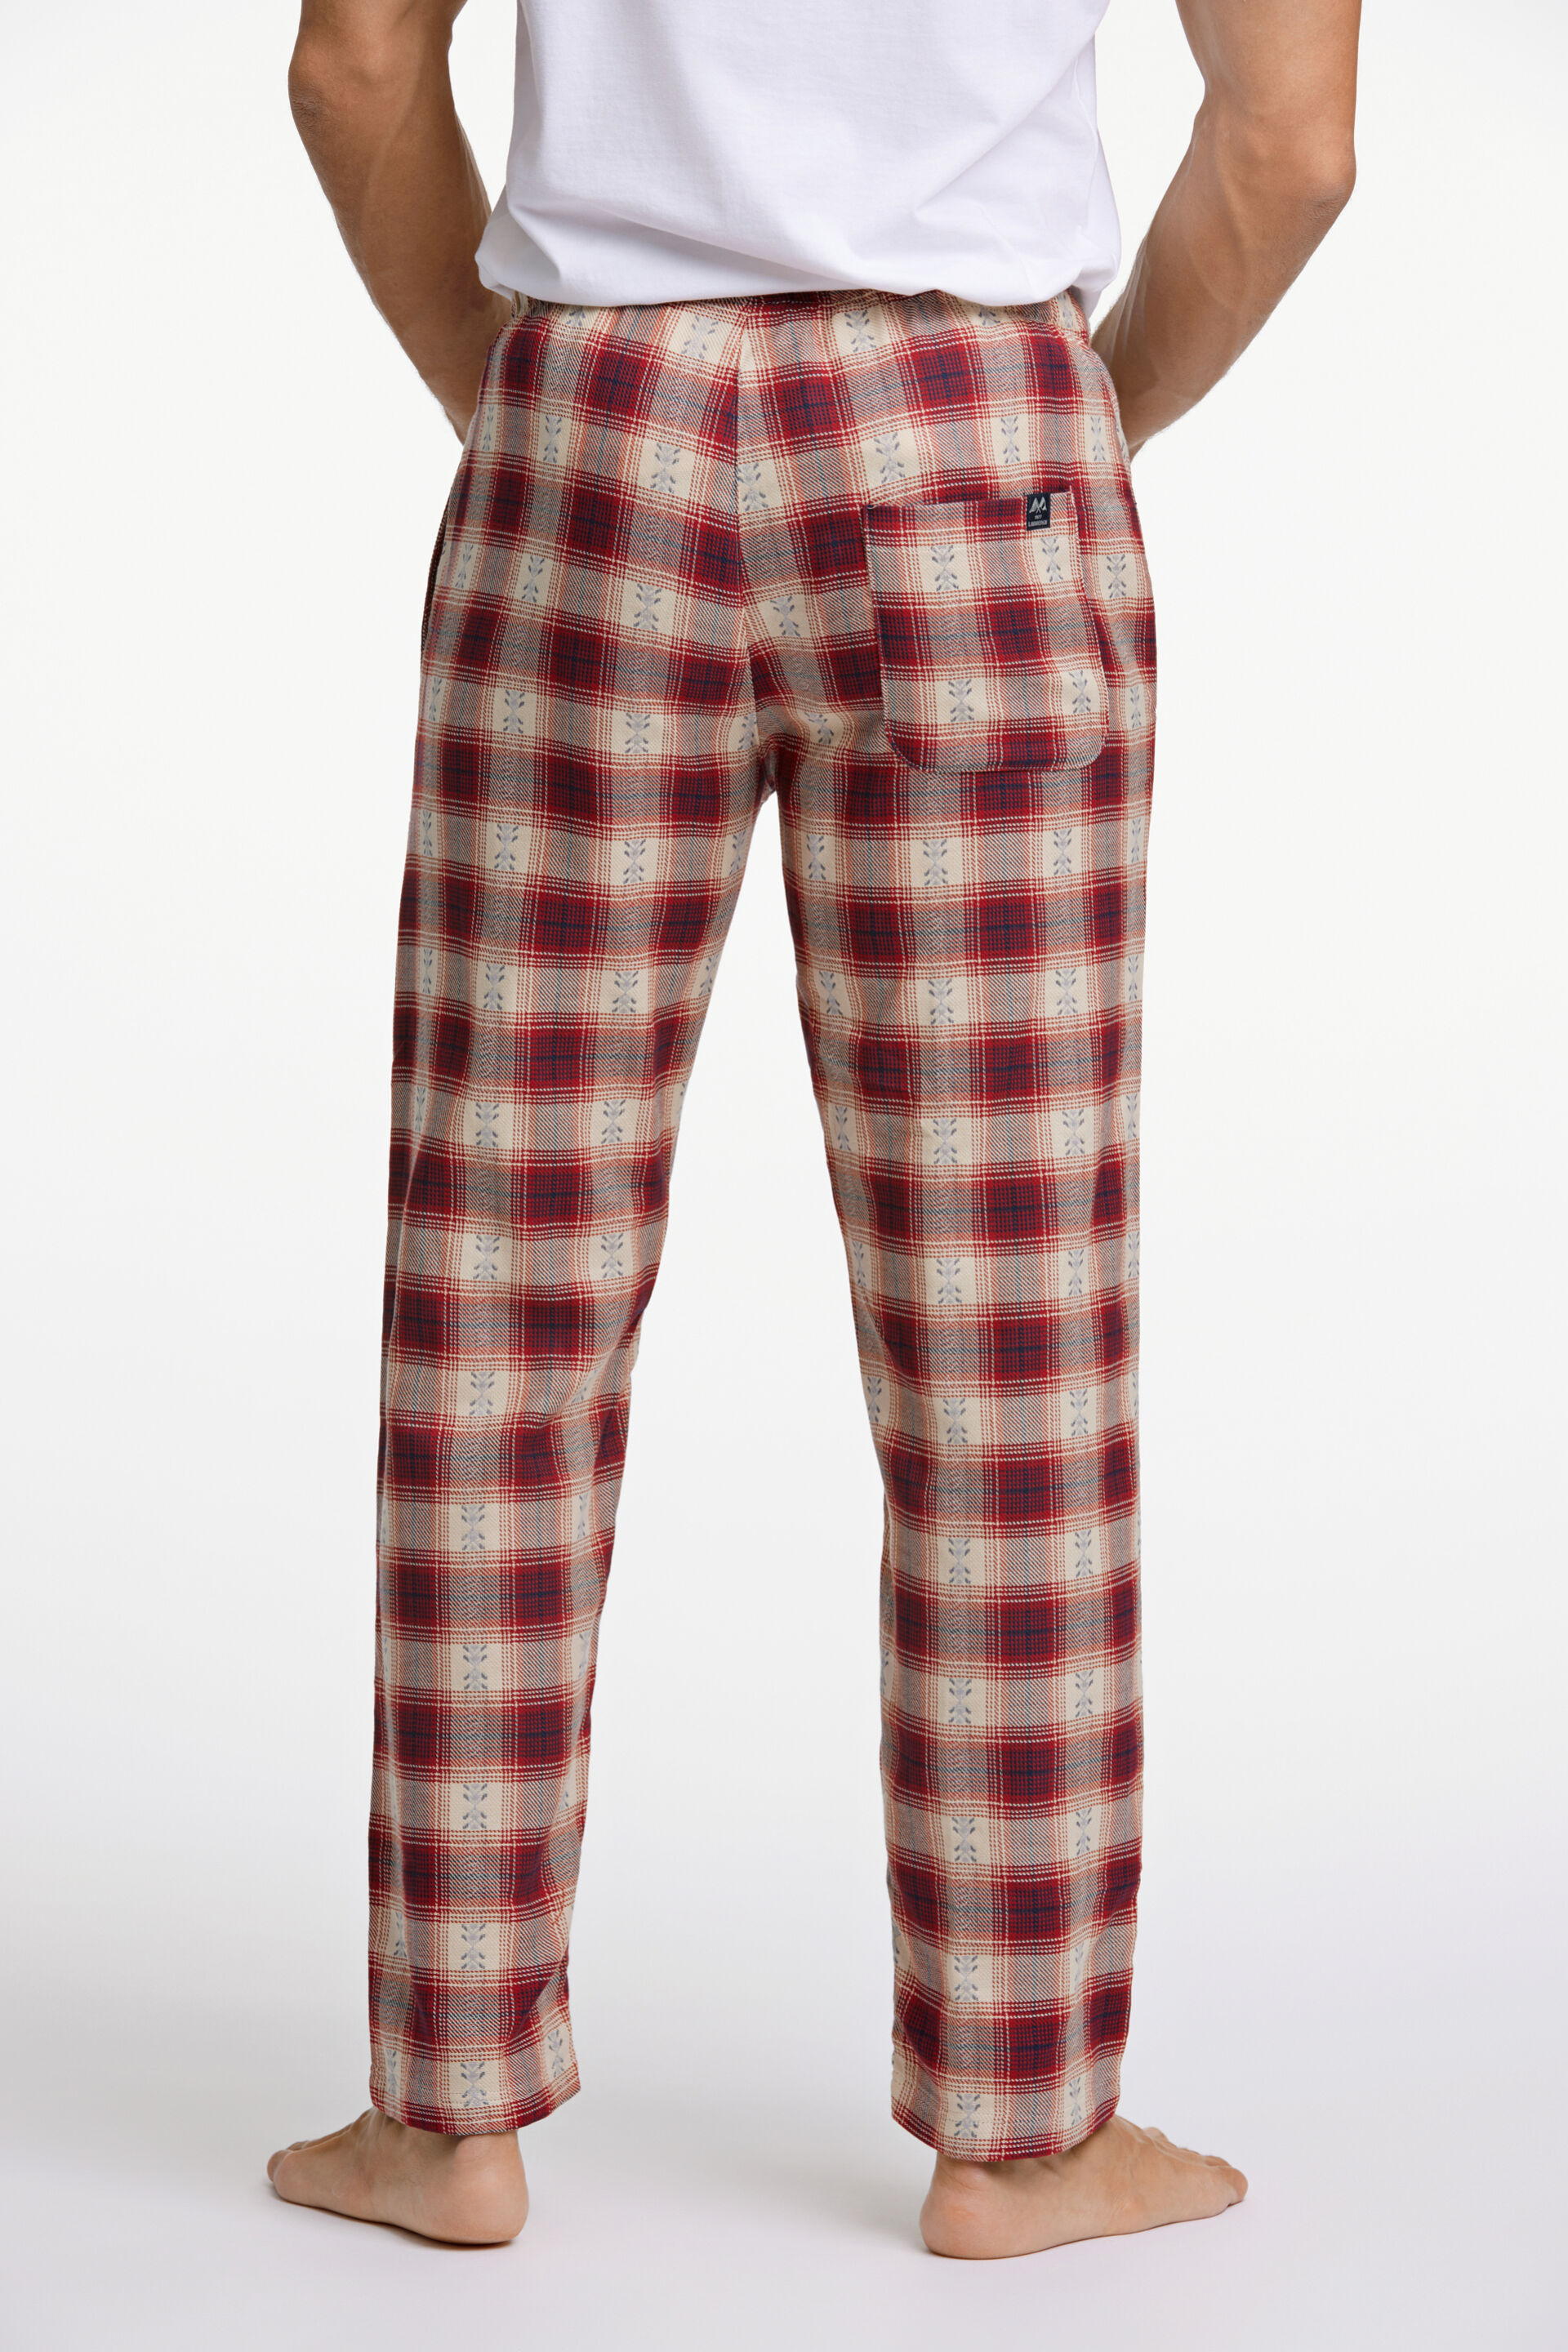 Lindbergh  Pyjamas 30-997512